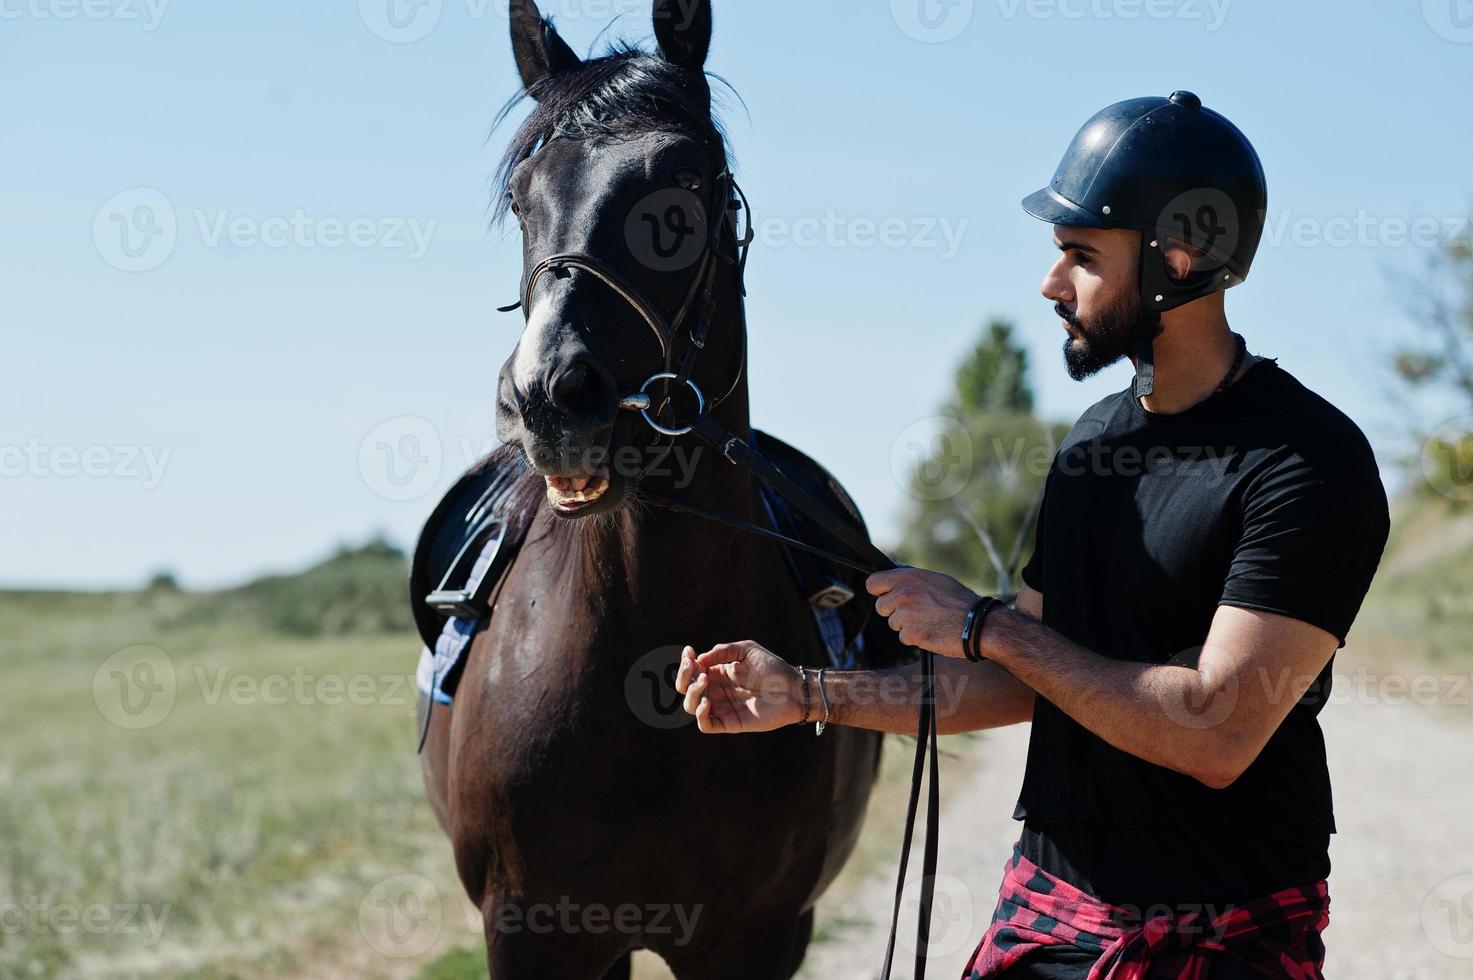 homem de barba alta árabe usar capacete preto com cavalo árabe. foto